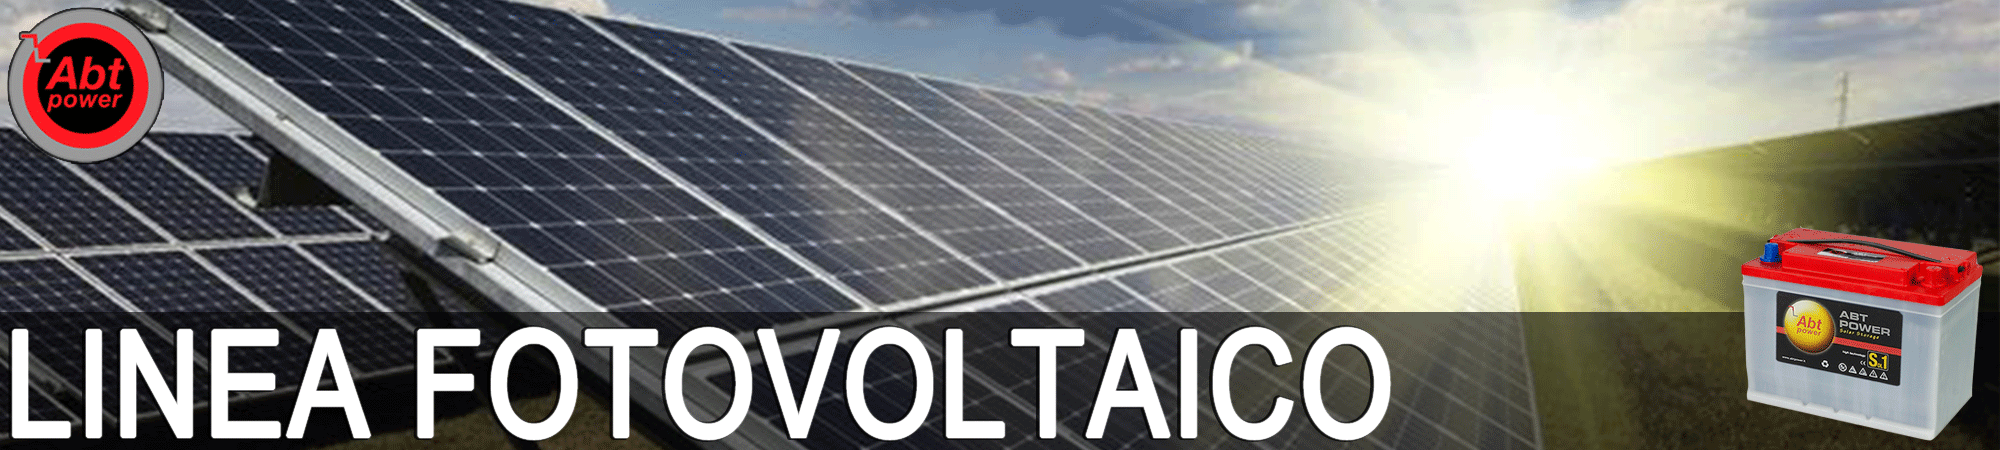 batterie per fotovoltaico